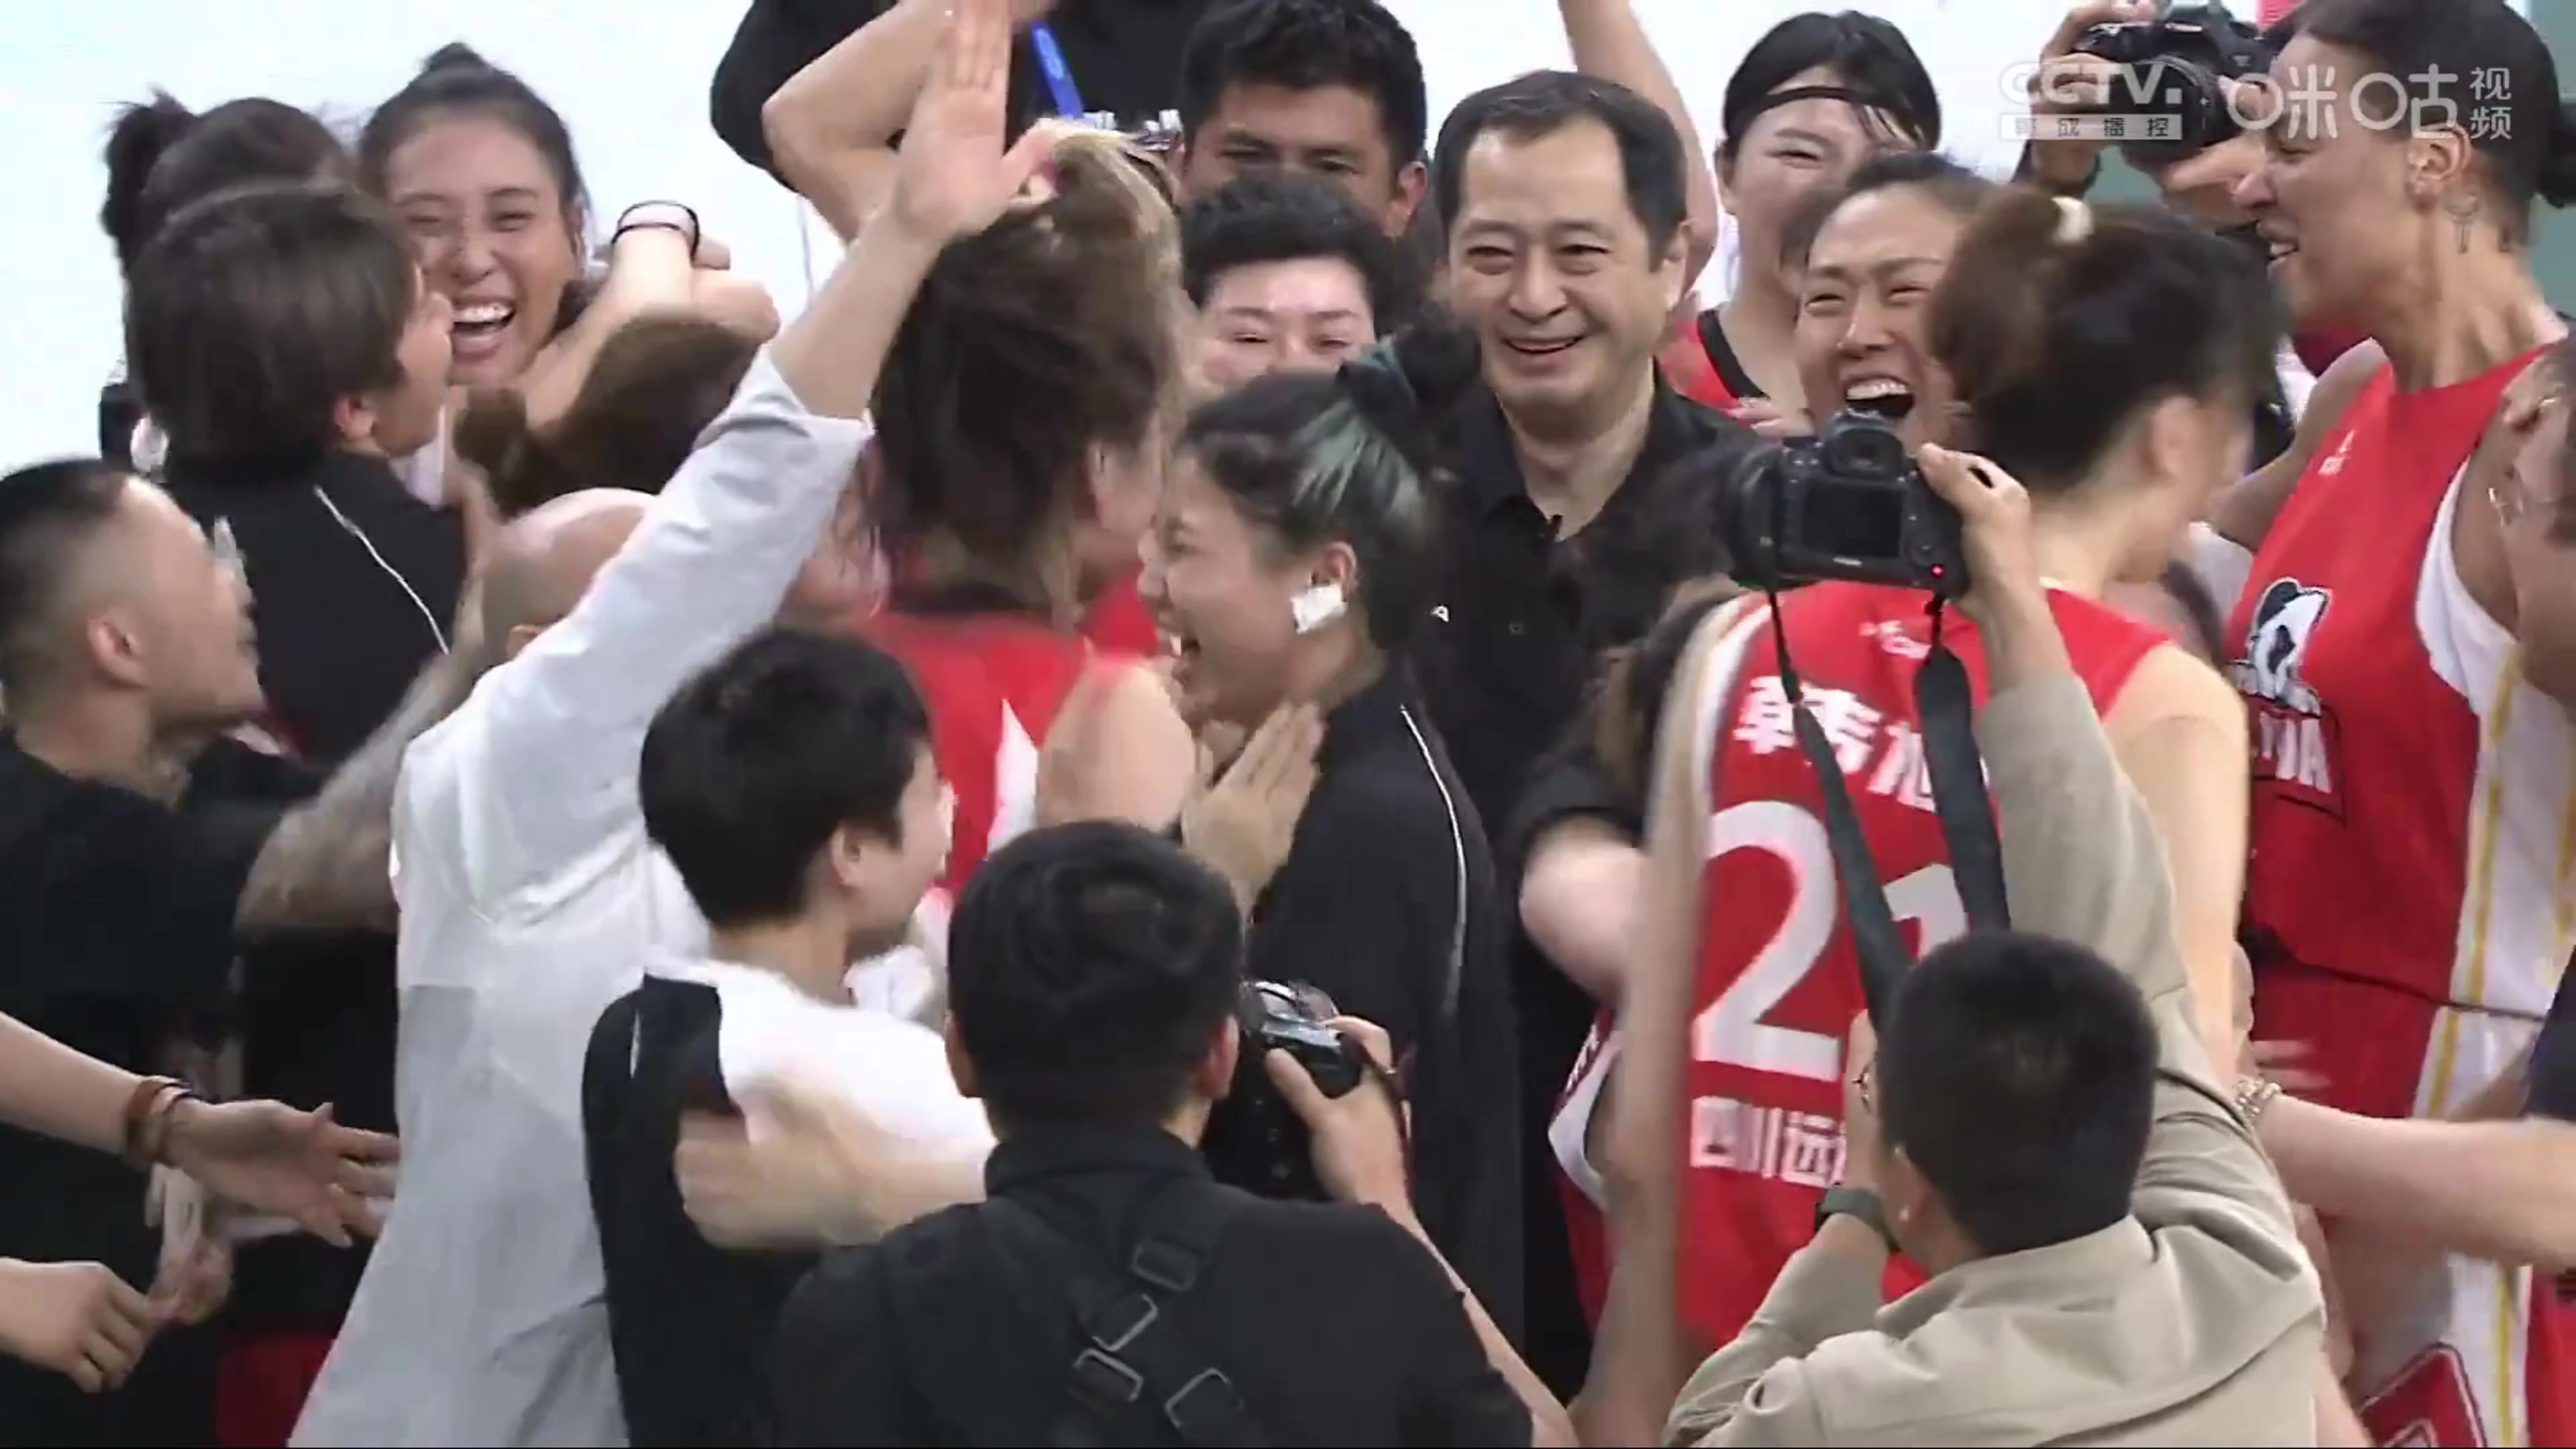 昨晚四川女篮夺冠，一位嘉宾庆祝时过于兴奋拍打韩旭力气过大，让韩旭有些生